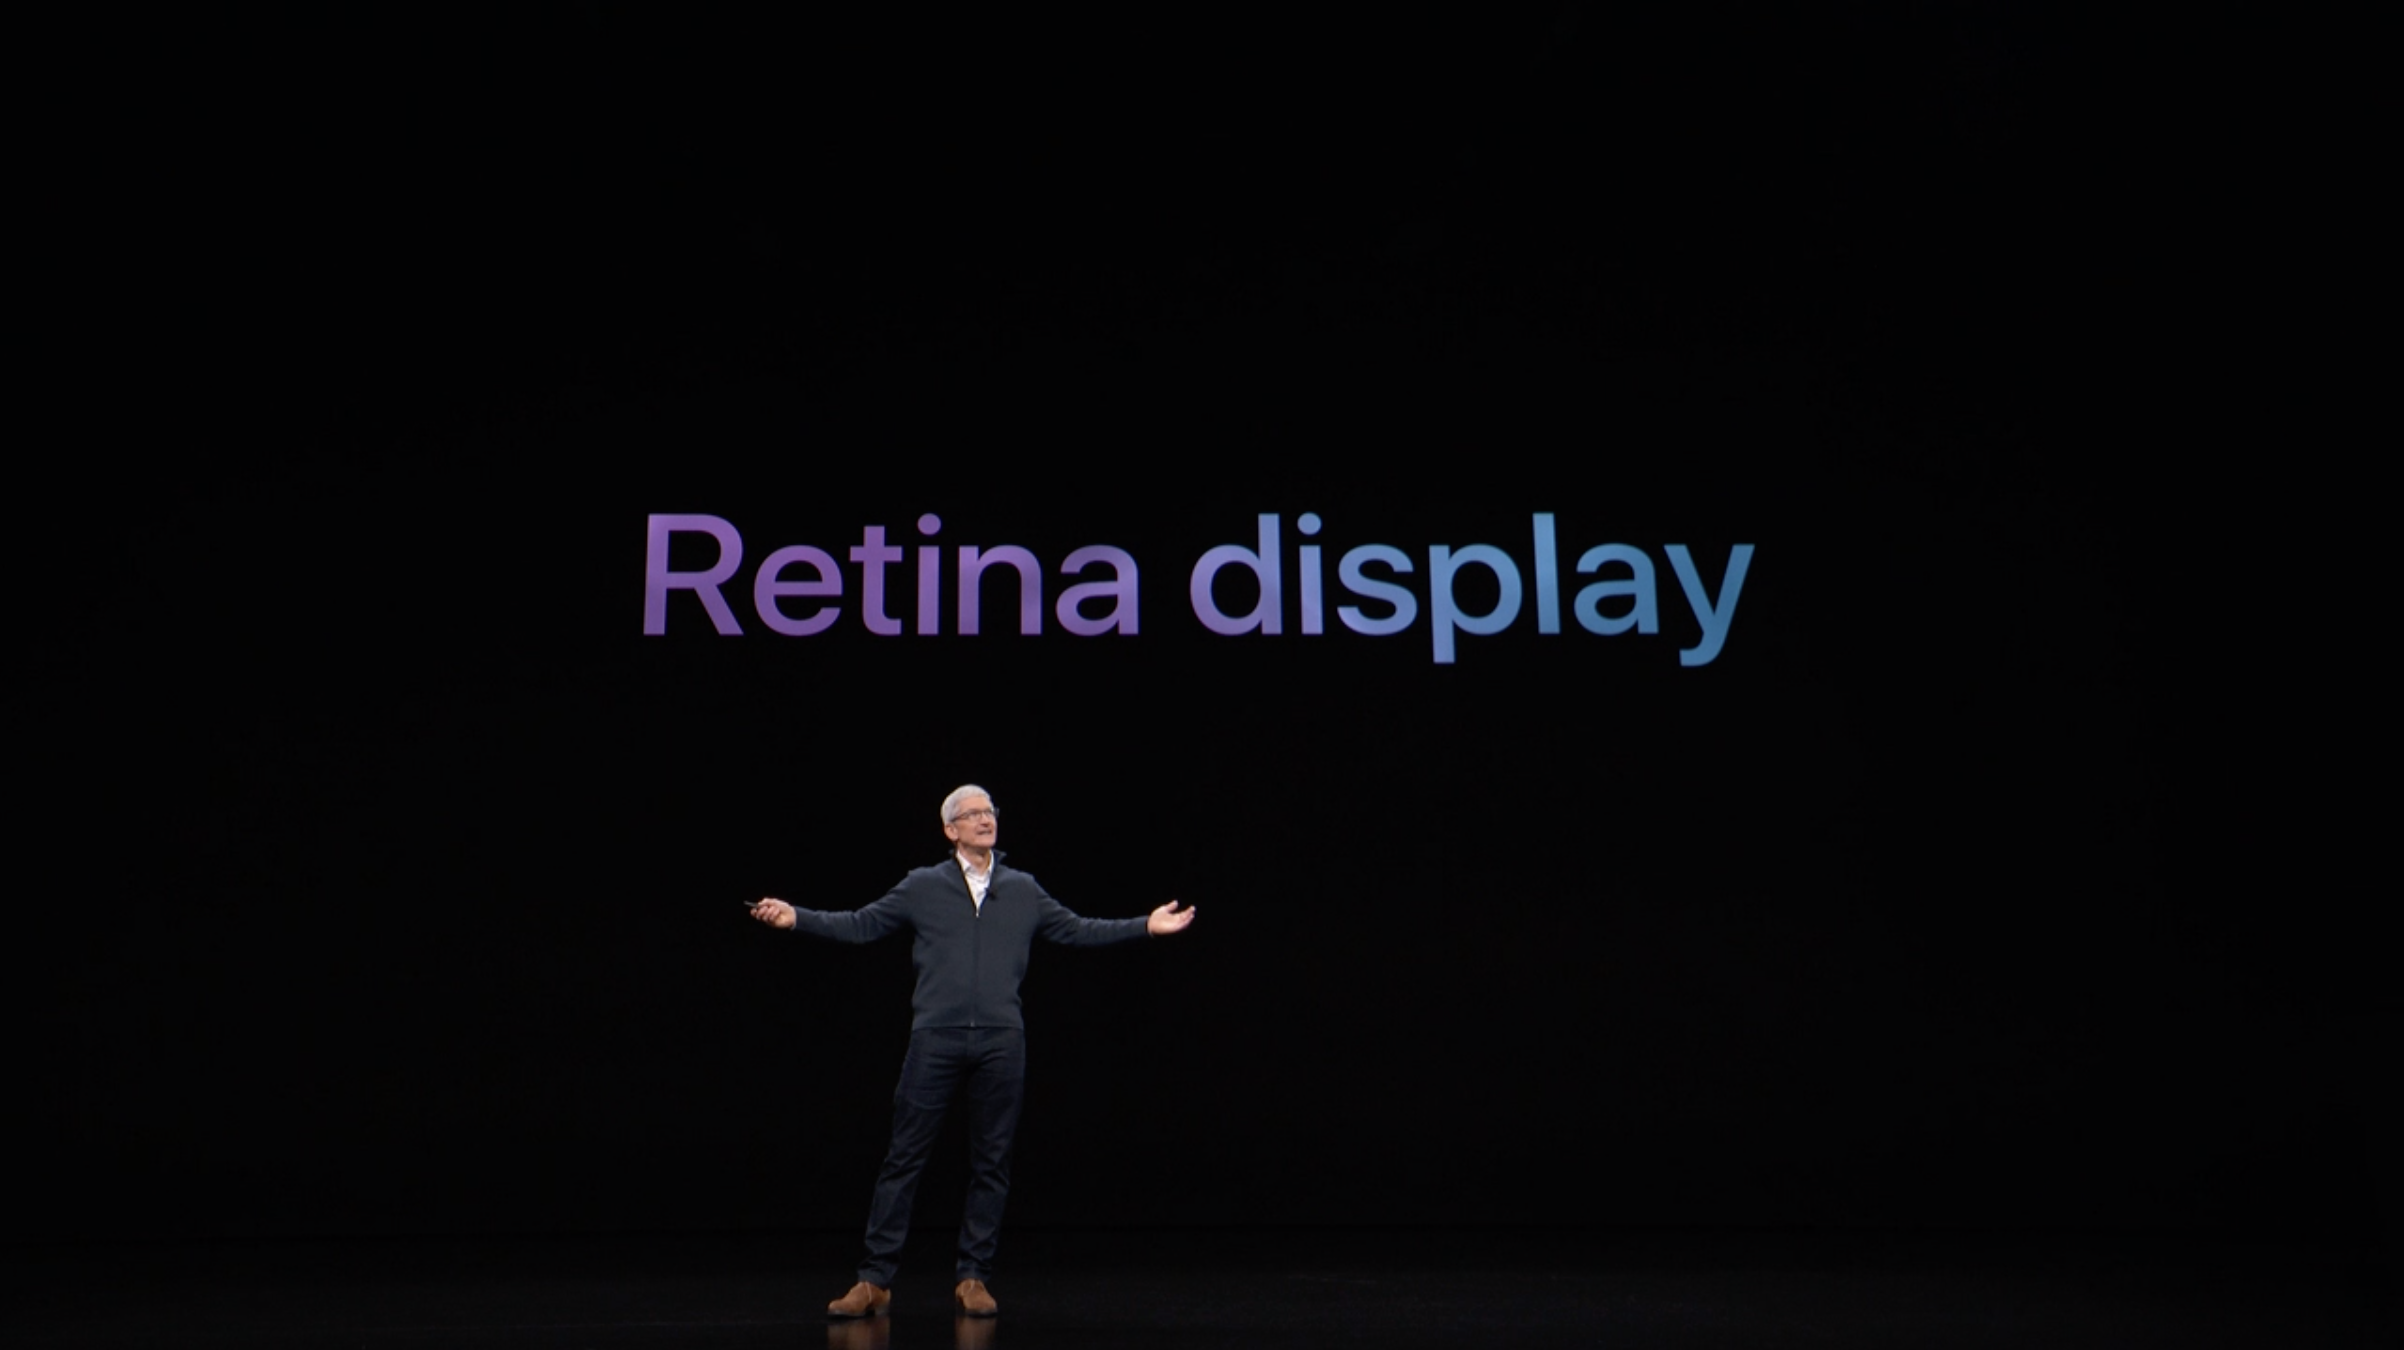 Этот день в истории Apple: выходит iPad 3 с великолепным дисплеем Retina